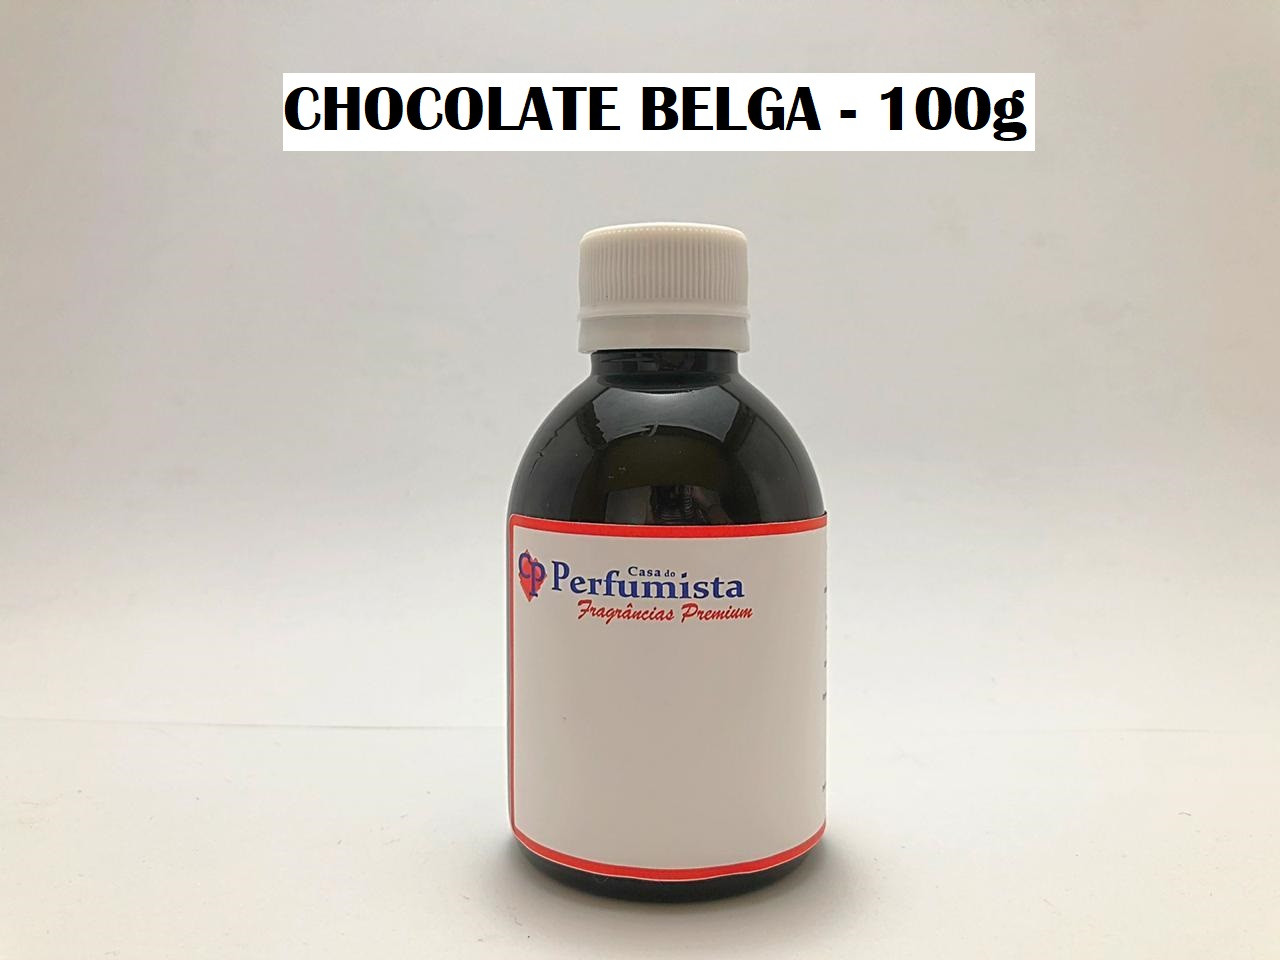 CHOCOLATE BELGA - 100g